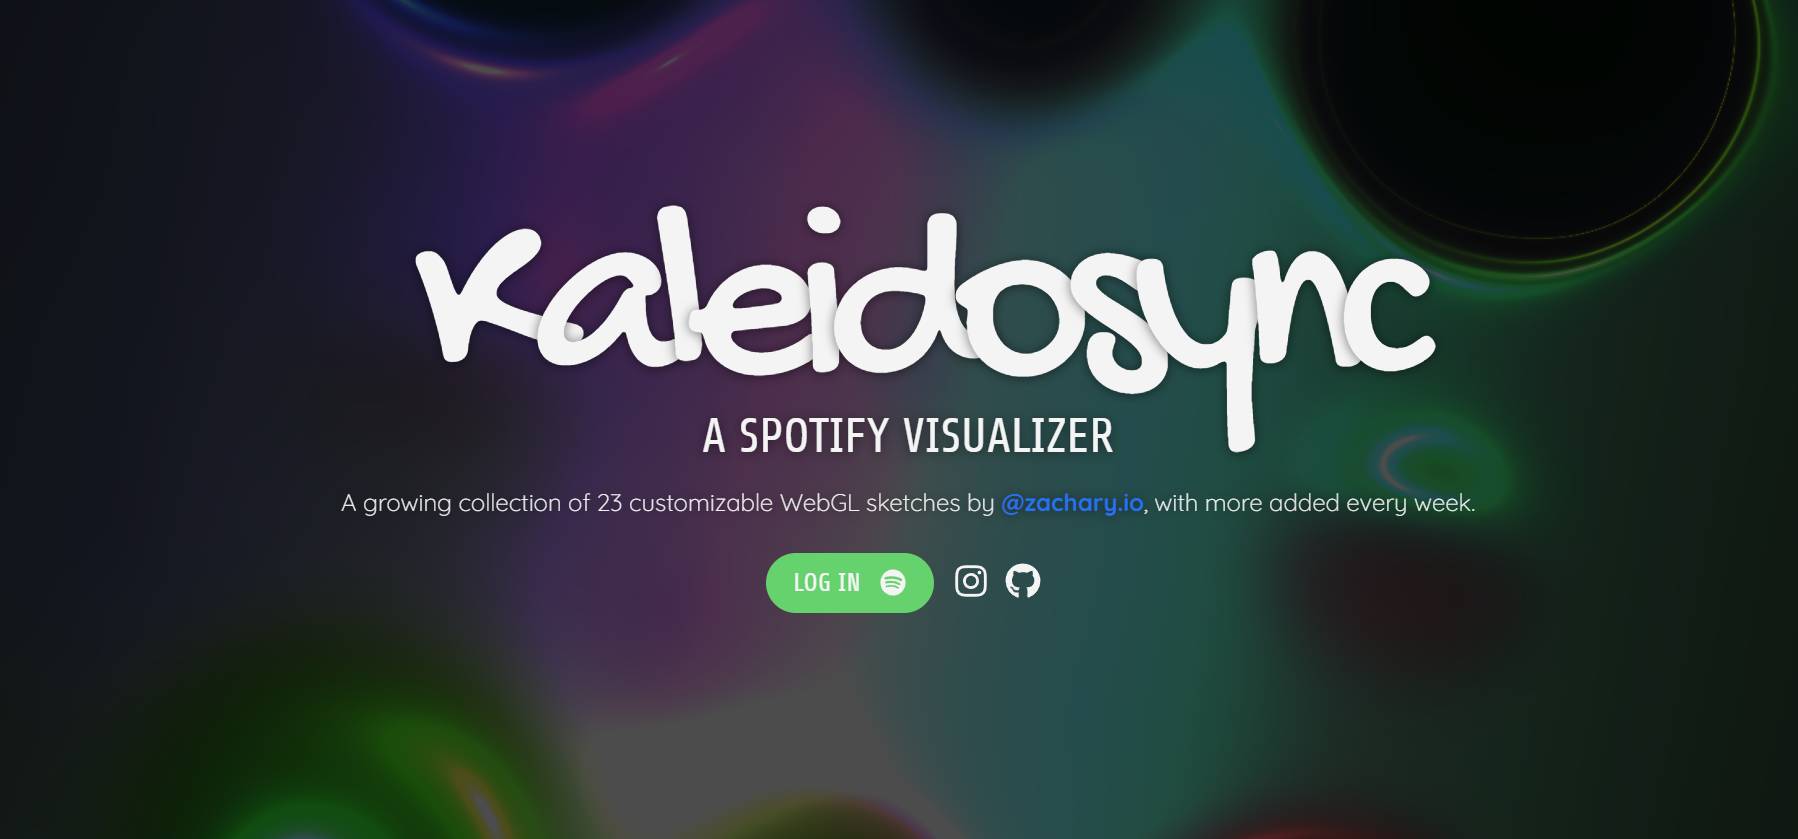 Las Spotify El visualizador llamado Kaleidosync Visualizer se puede utilizar en la web